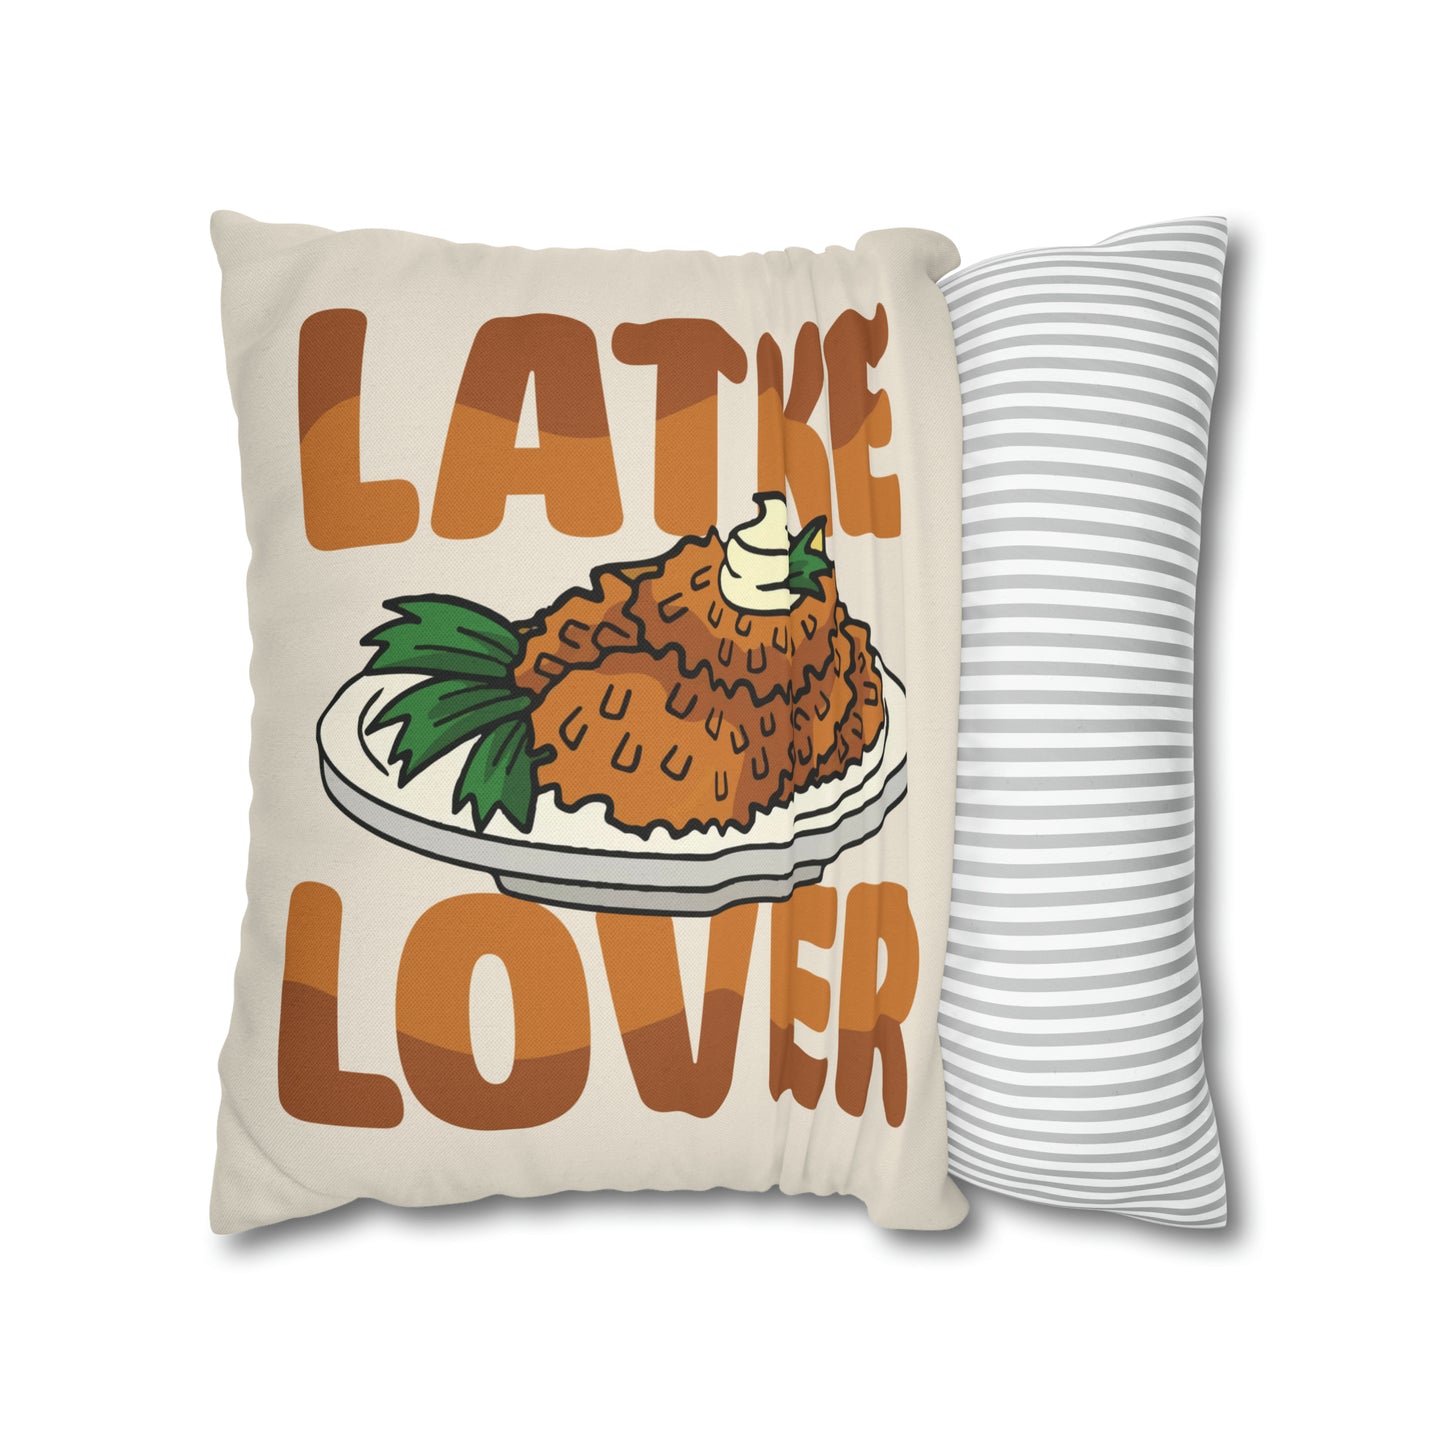 "Latke Lover" Hanukkah Pillow Cover